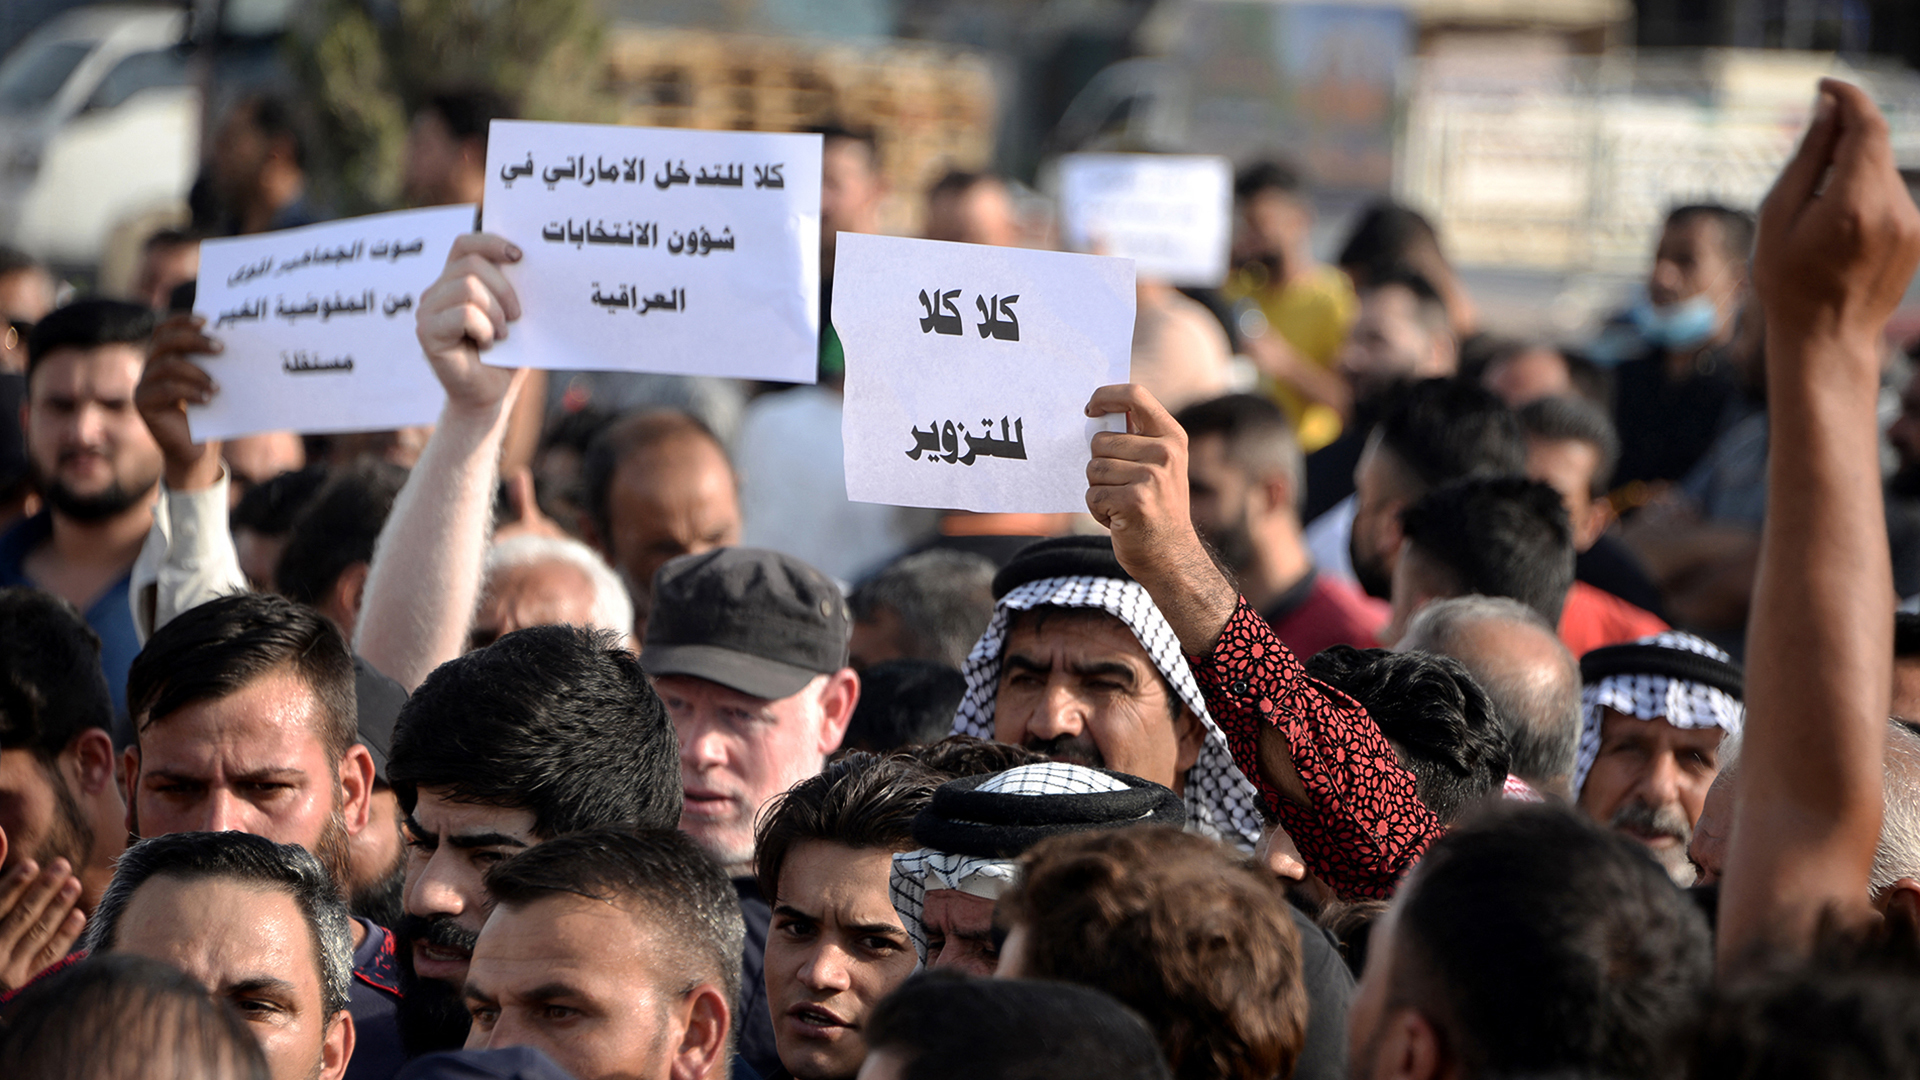 تظاهرات العراق - المنطقة الخضراء